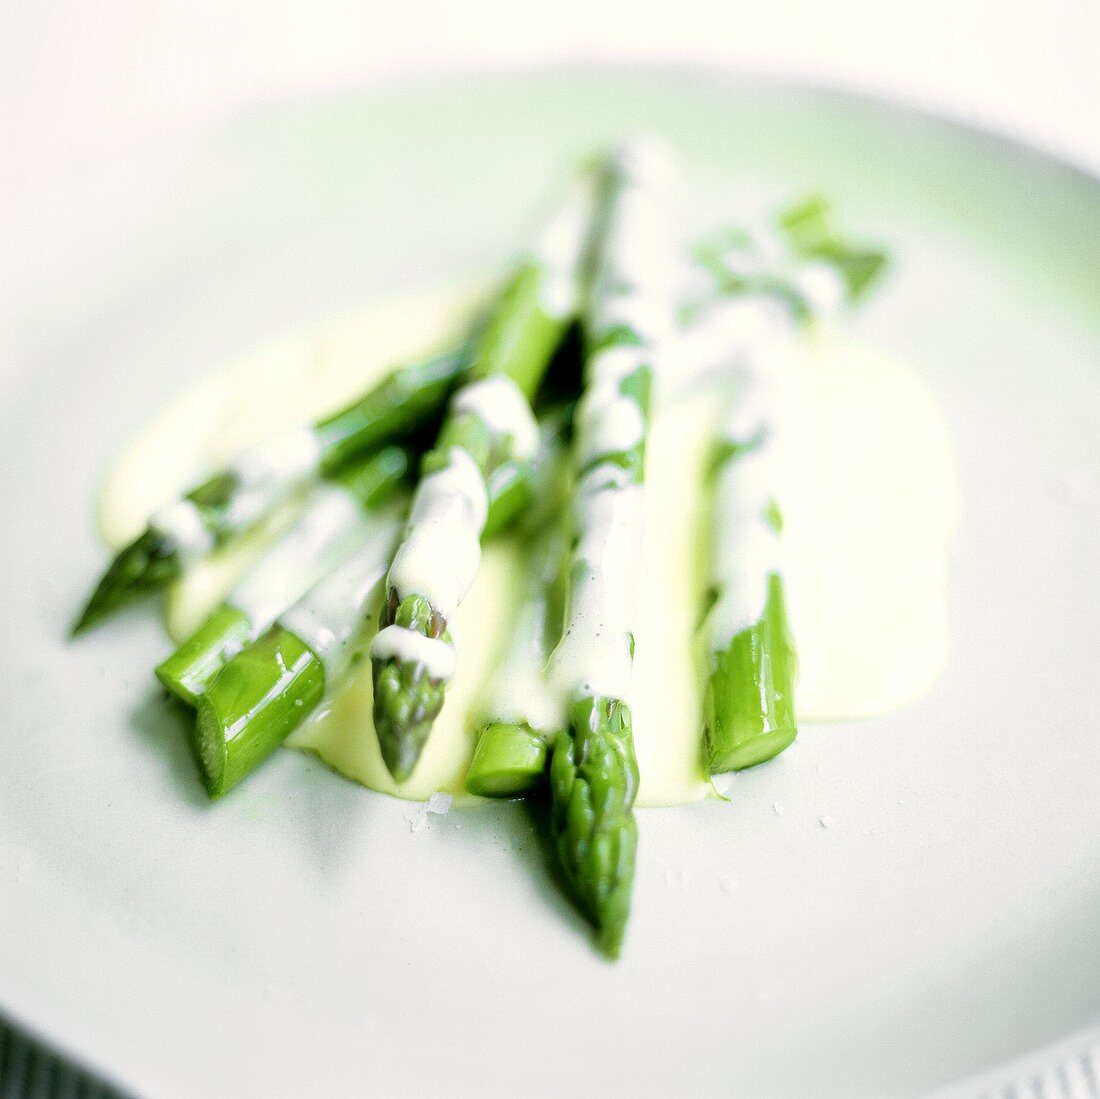 Green asparagus with hollandaise sauce